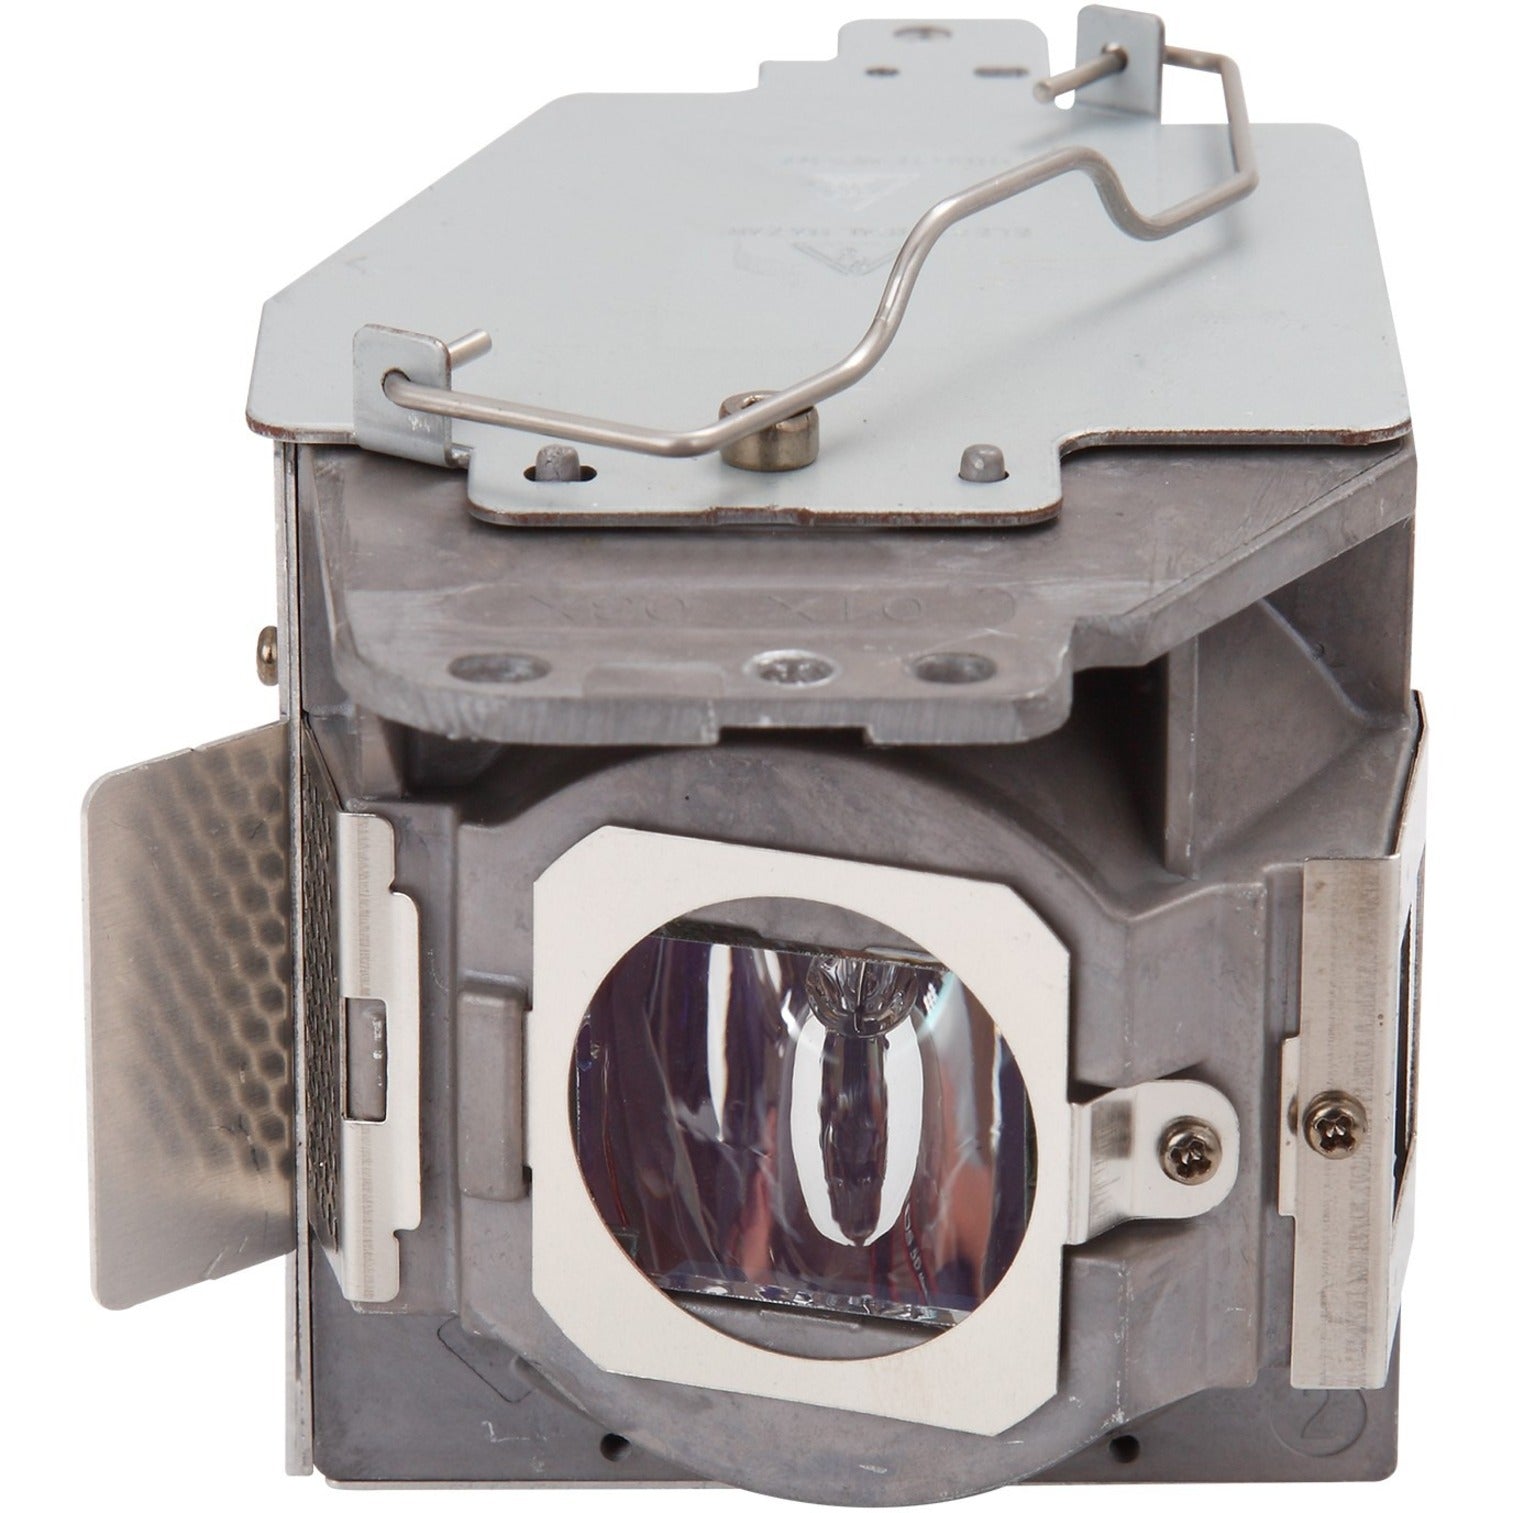 ViewSonic RLC-078 Projektorlampe - Hochwertiger Ersatz für PJD6235 und PJD6245 Projektoren